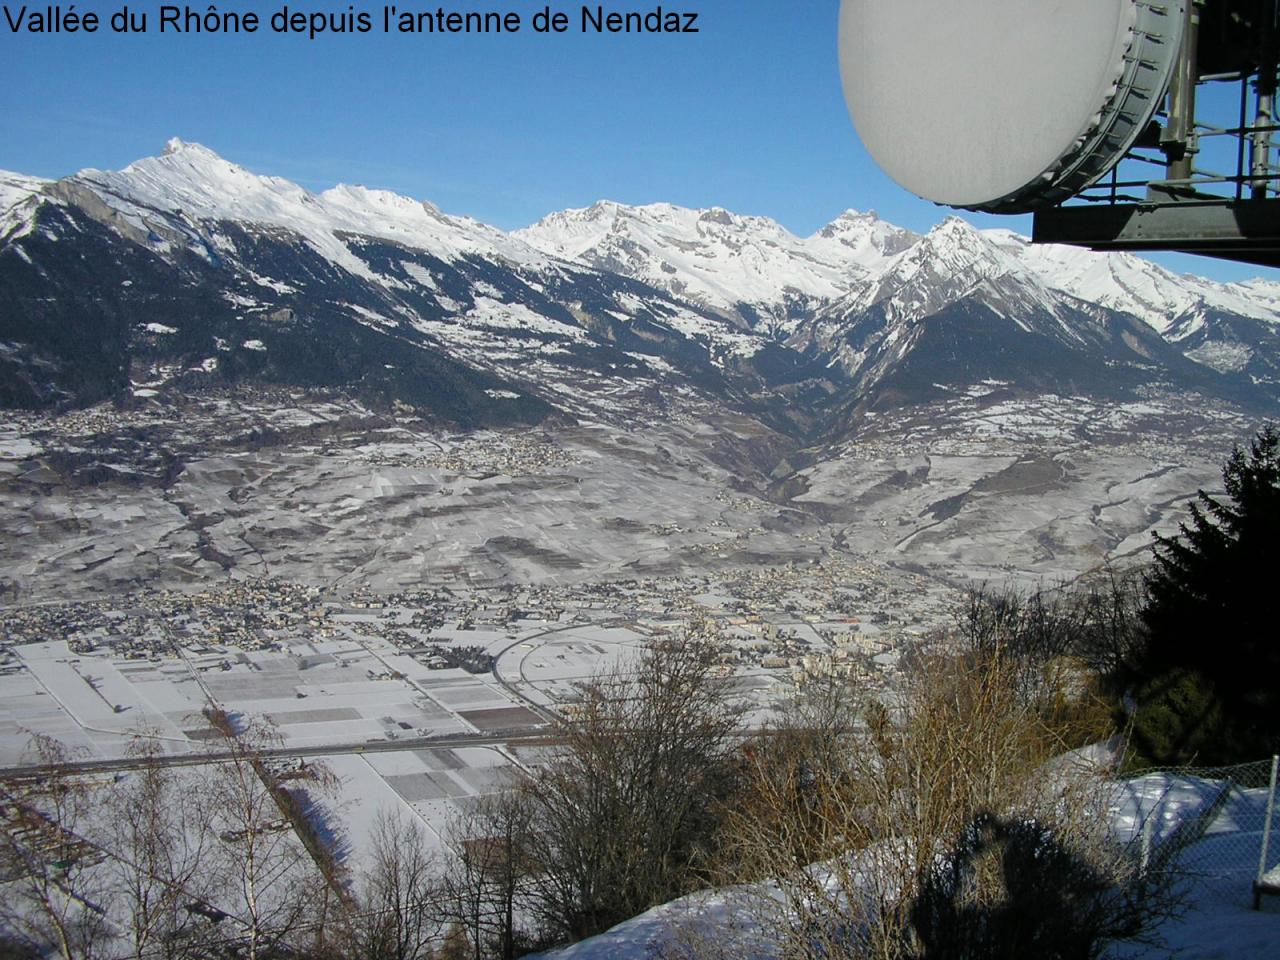 Panorama Nord von der Antenne in Haute-Nendaz